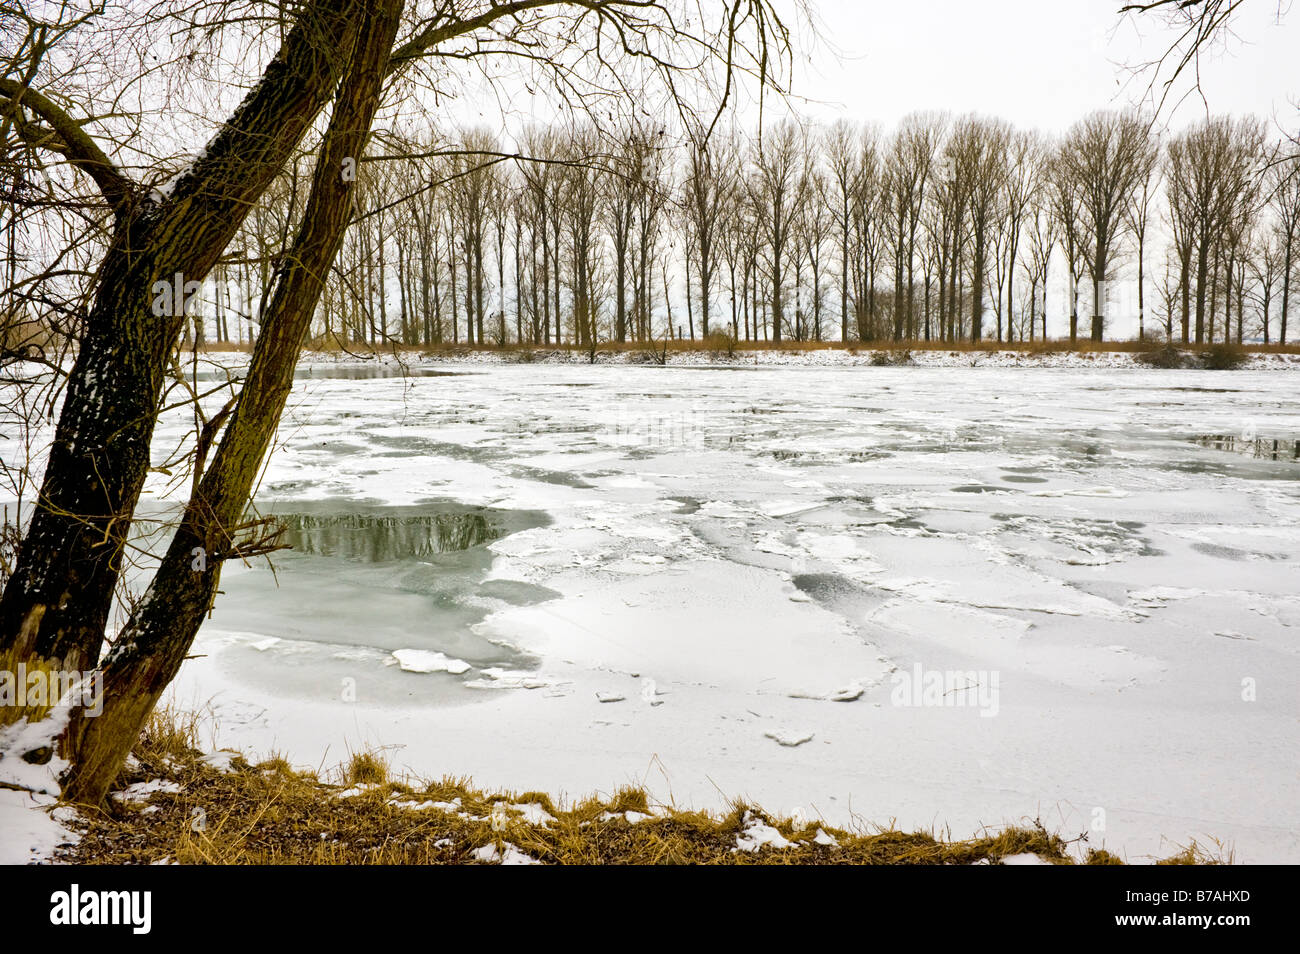 Eisscholle Eisschollen eingefroren Naturlandschaft landen Donau Donau Fluss Banken Winter Winter weißen Schnee Eis eisig kalt werden kaltes Wasser Bäume Stockfoto